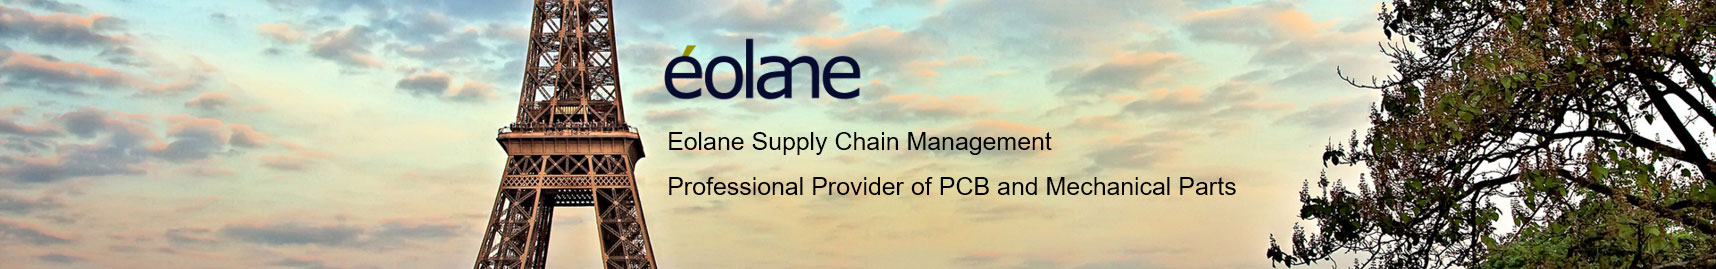 eolane供应链管理专业欧洲印刷电路板和技术部件领导者